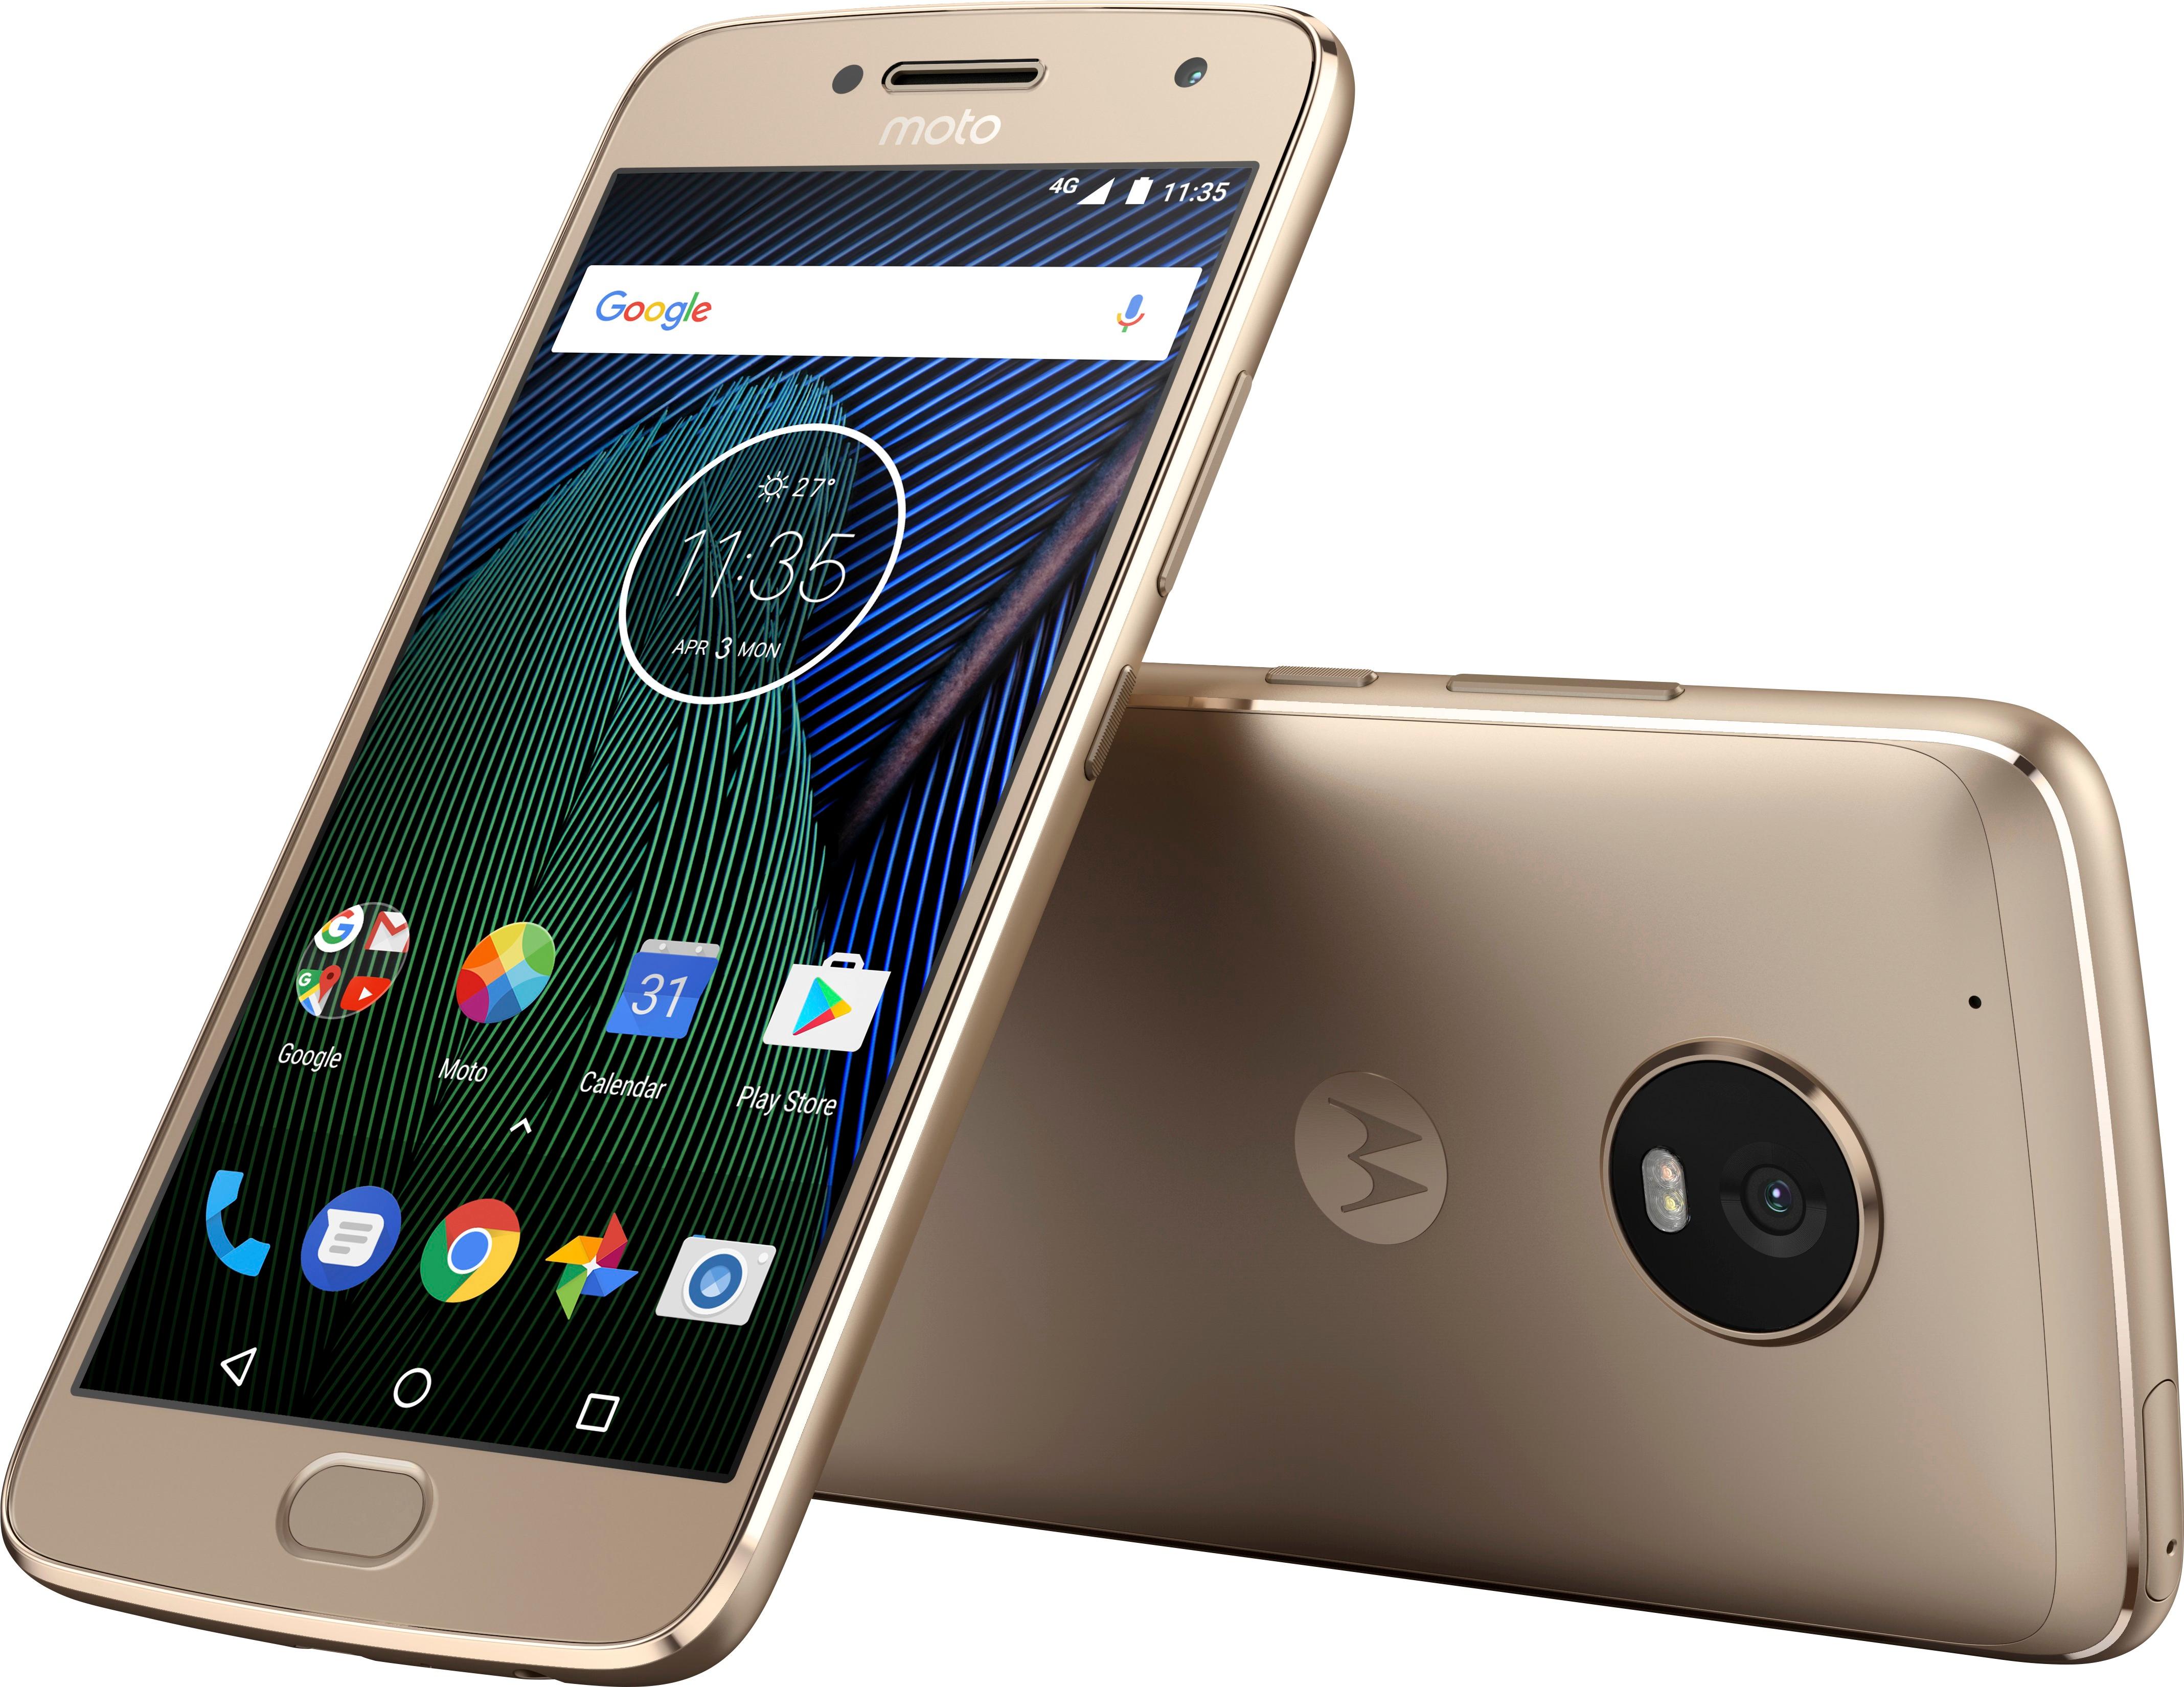 radium Maken Atlantische Oceaan Best Buy: Motorola Moto G Plus (5th Gen) 4G LTE with 32GB Memory Cell Phone  (Unlocked) Fine Gold 01111NARTL